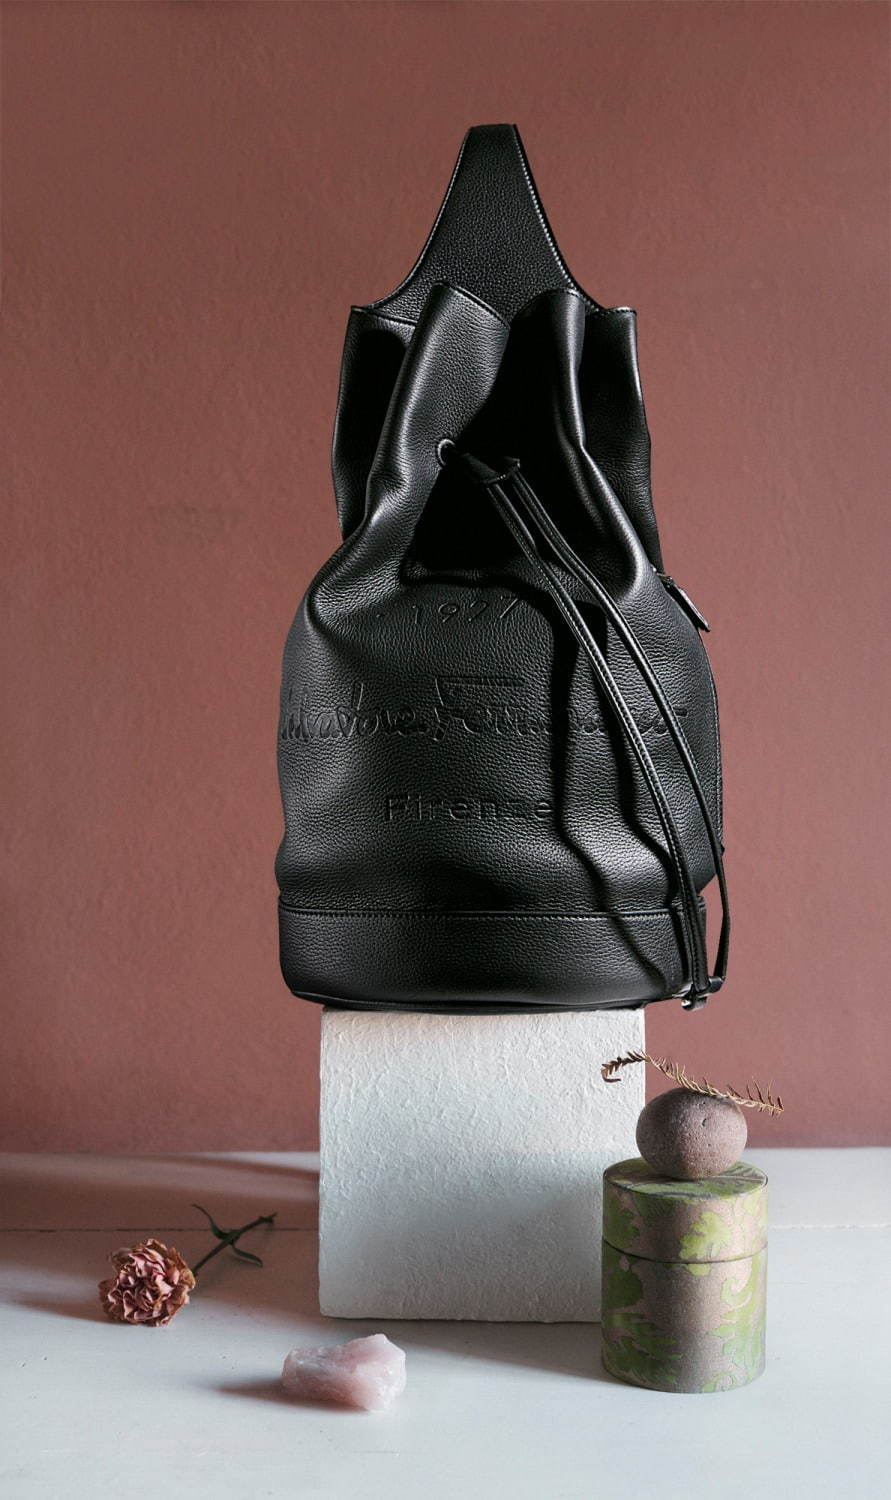 サルヴァトーレ フェラガモ新メンズライン トルナブオーニ 1927 バッグを中心にレザーグッズを展開 ファッションプレス